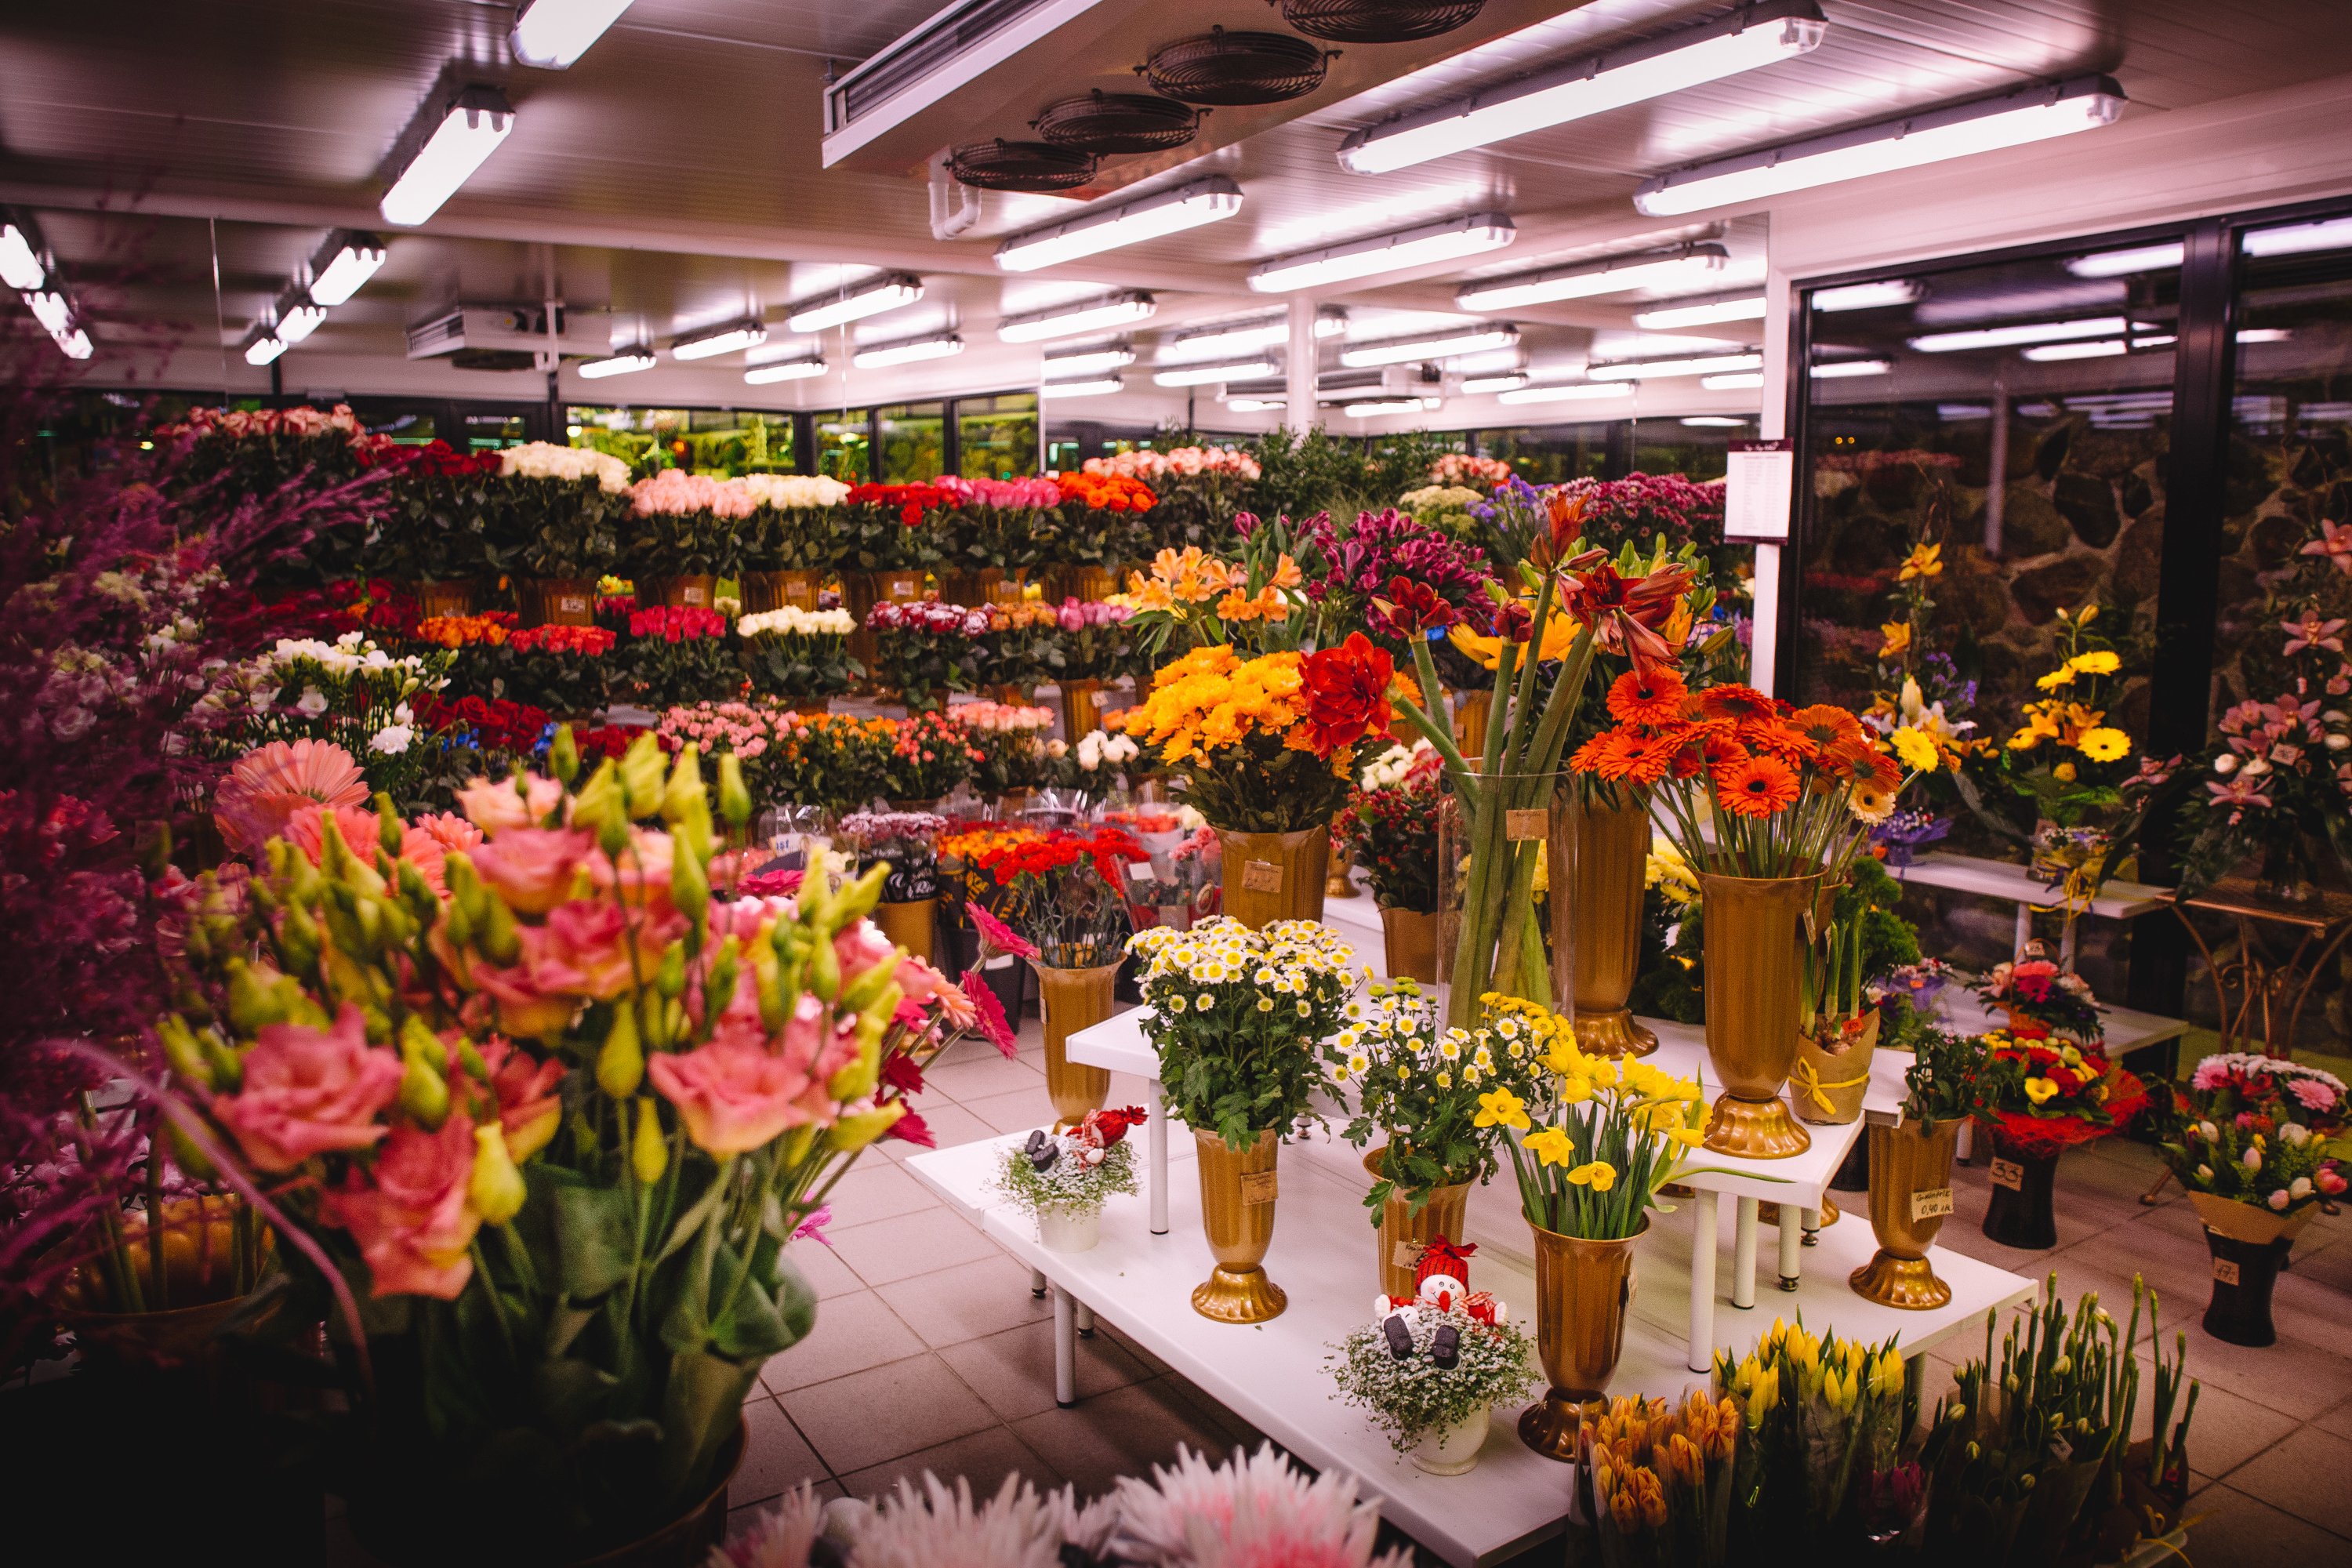 Enorme y hermosa floristería y amplio surtido de flores. | Fuente: Shutterstock